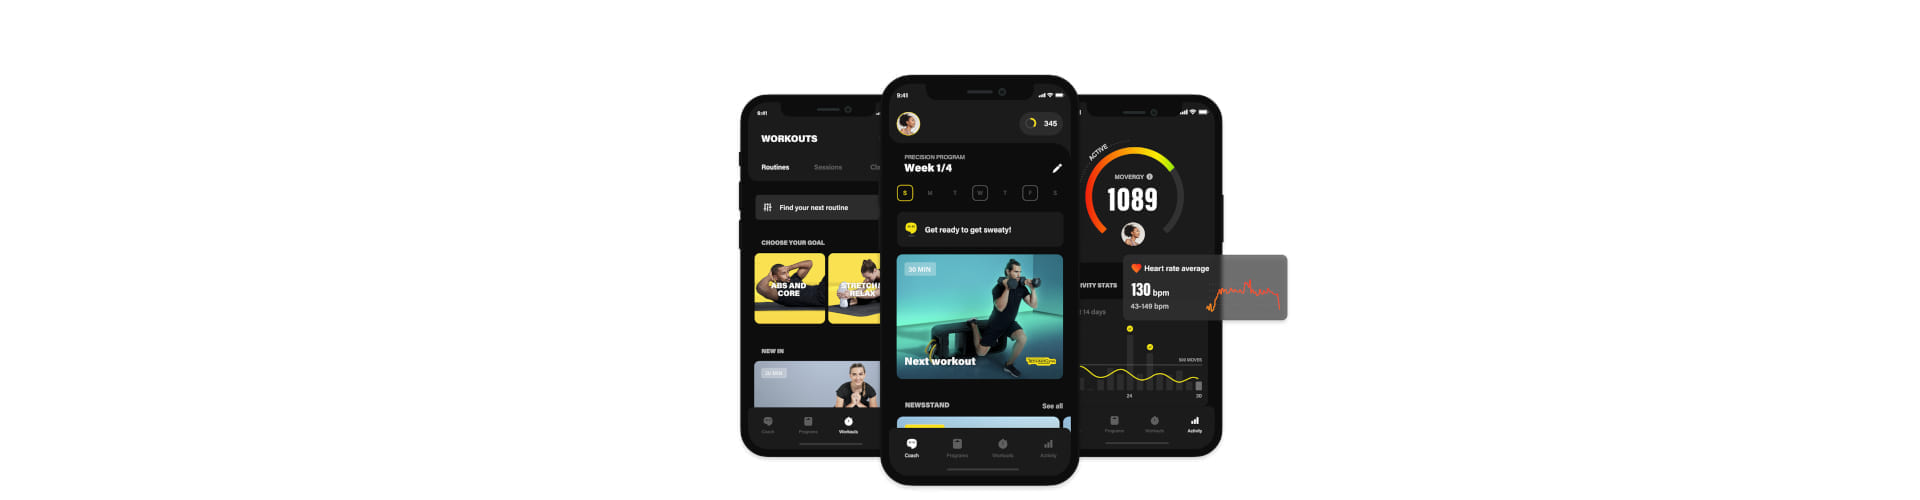 Uusi Technogym App treenisovellus auttaa saavuttamaan tavoitteet nopeammin